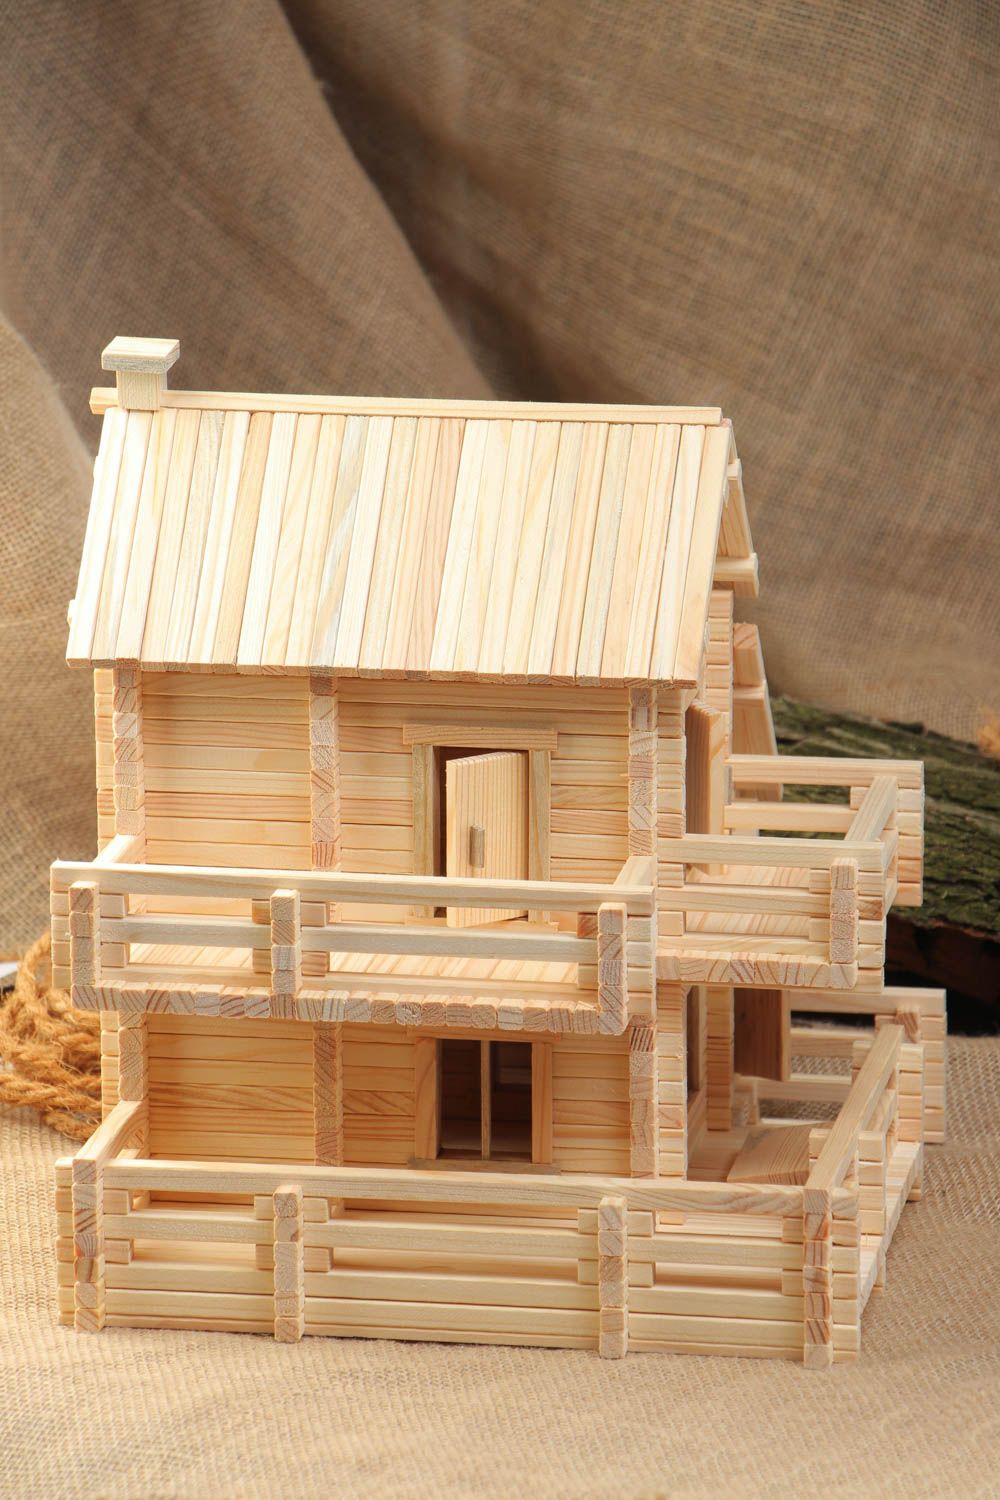 Mecano de madera hecho a mano casita hacienda 445 detalles para niños y adultos foto 1